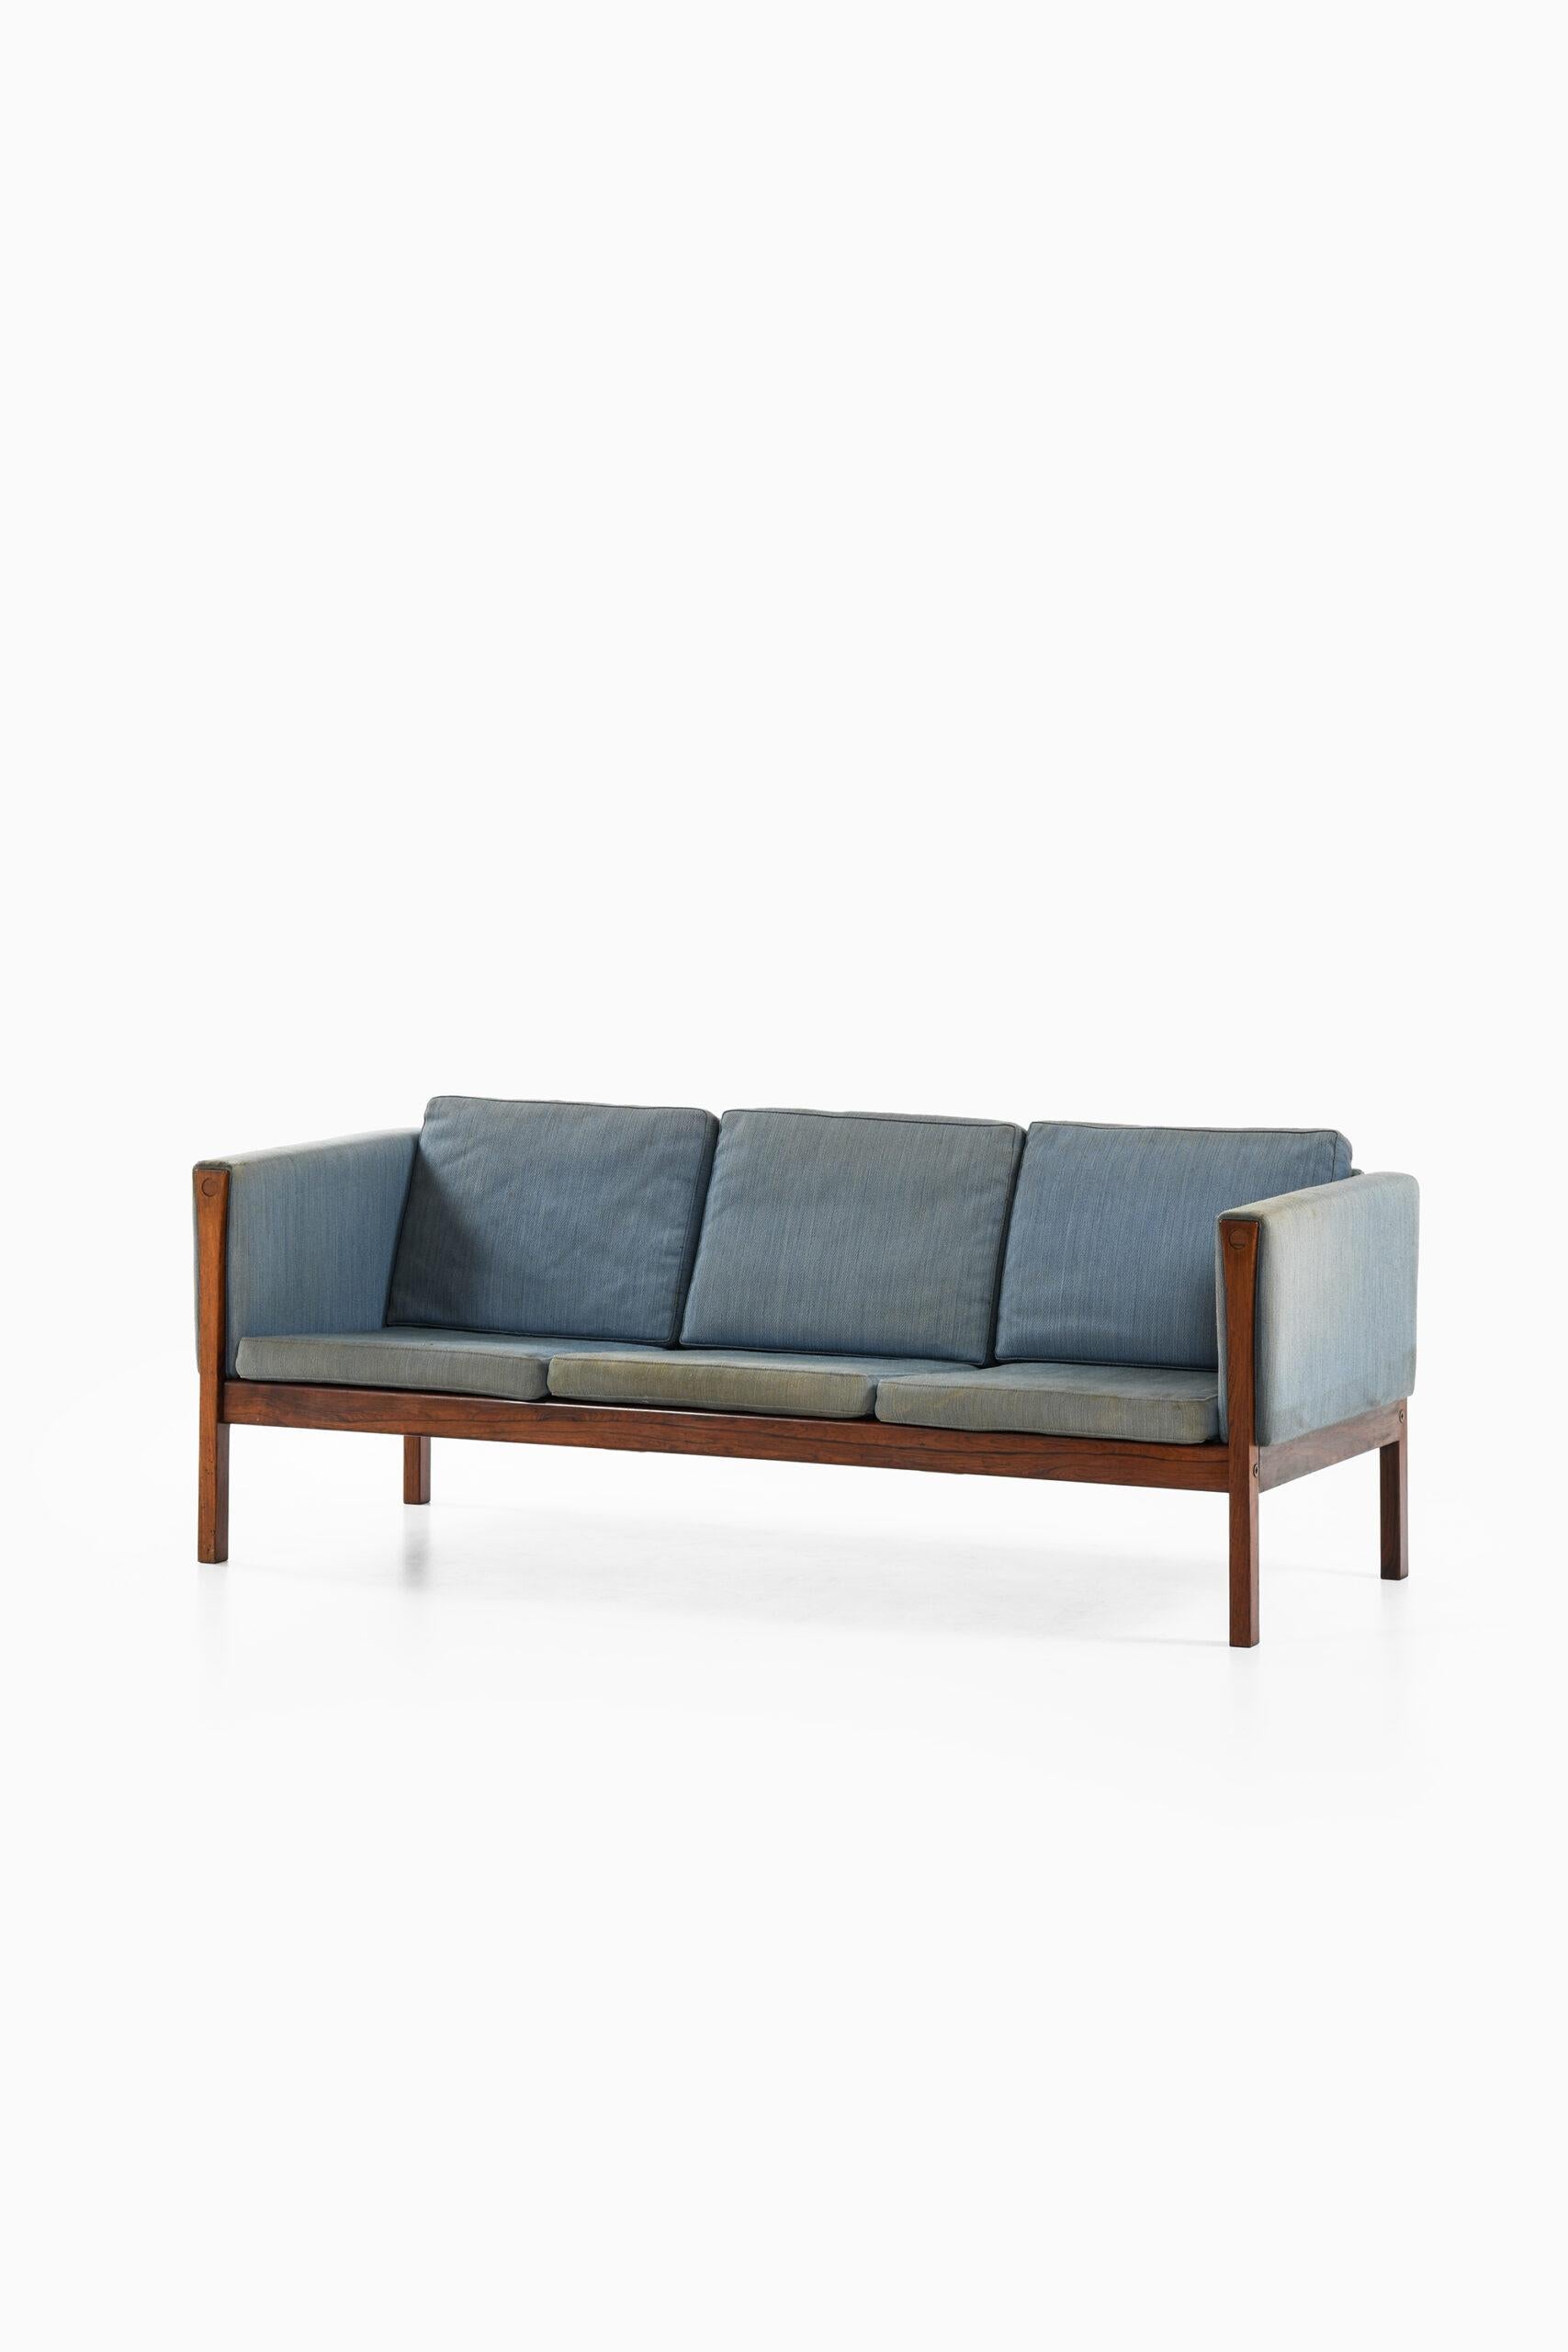 Rare sofa model CH163 designed by Hans Wegner. Produced by Carl Hansen & Son in Denmark.